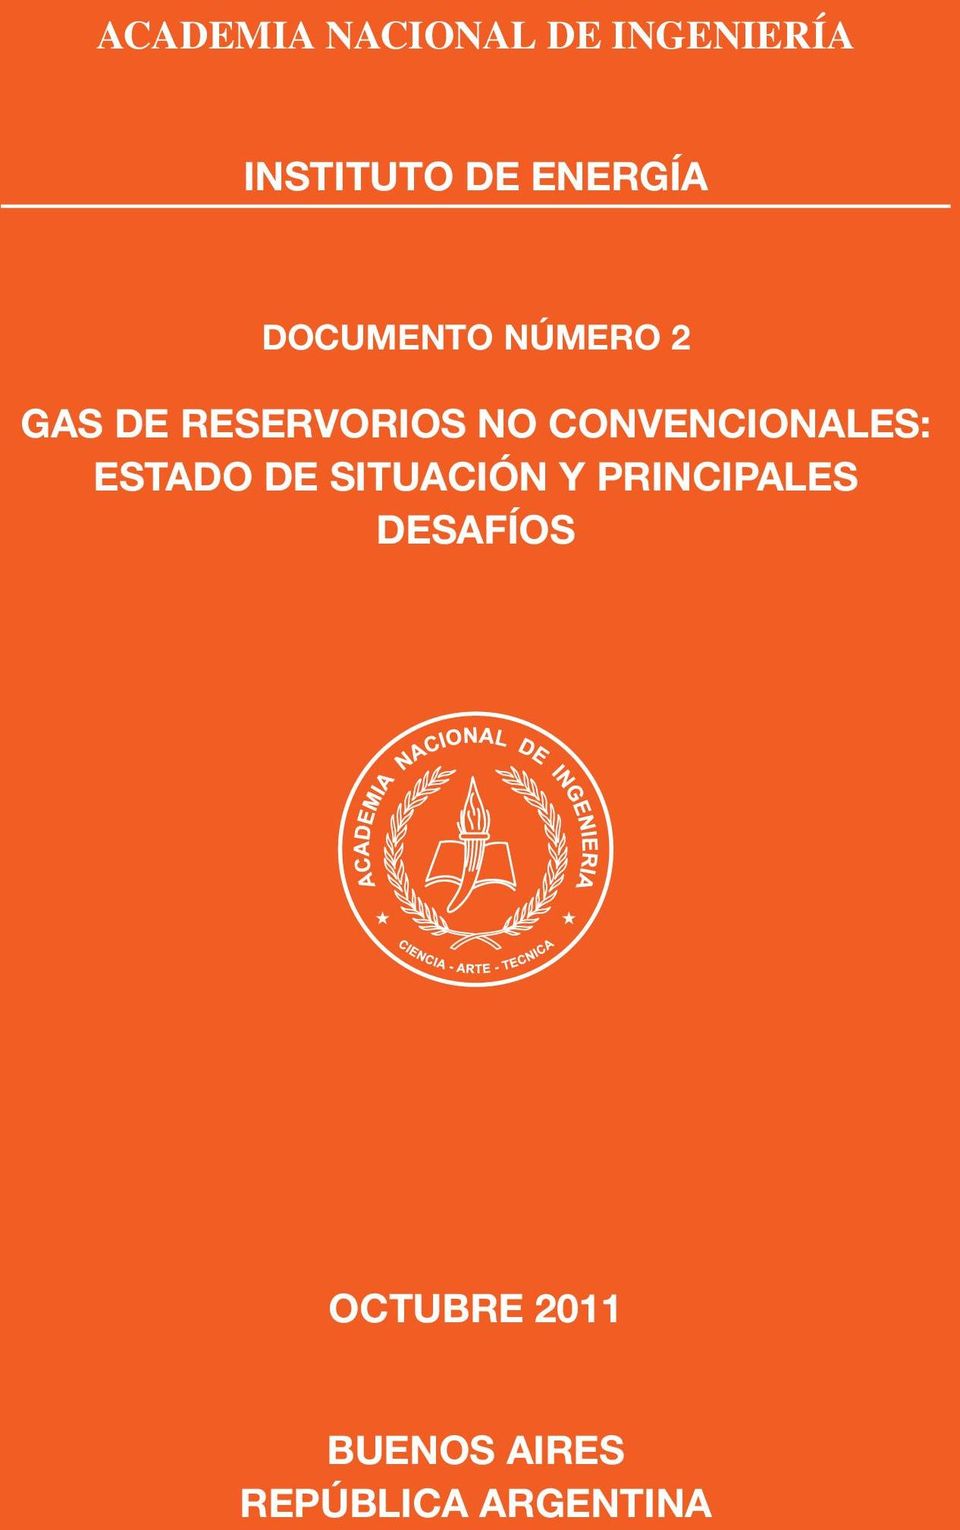 CONVENCIONALES: ESTADO DE SITUACIÓN Y PRINCIPALES